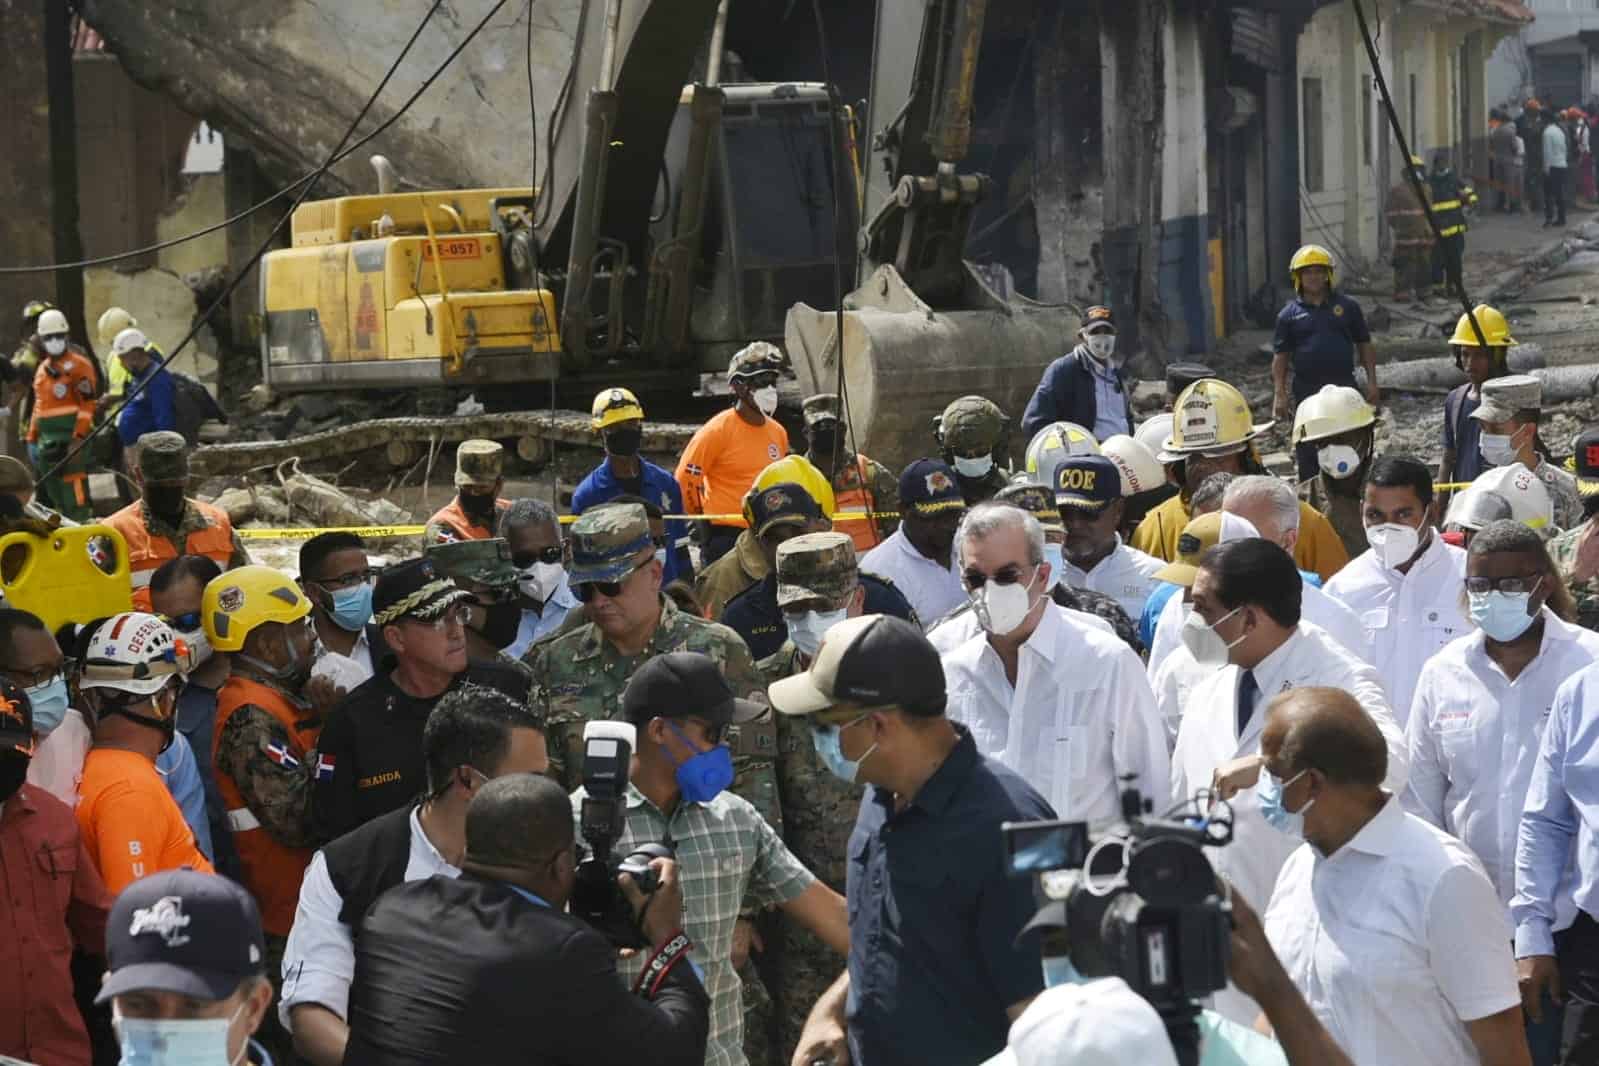 El presidente Luis Abinader visitó la zona afectada por la explosión que sacudió San Cristóbal y prometió enfocar el trabajo de las dependencias de su gobierno a solucionar la crisis que envuelve a la ciudad.